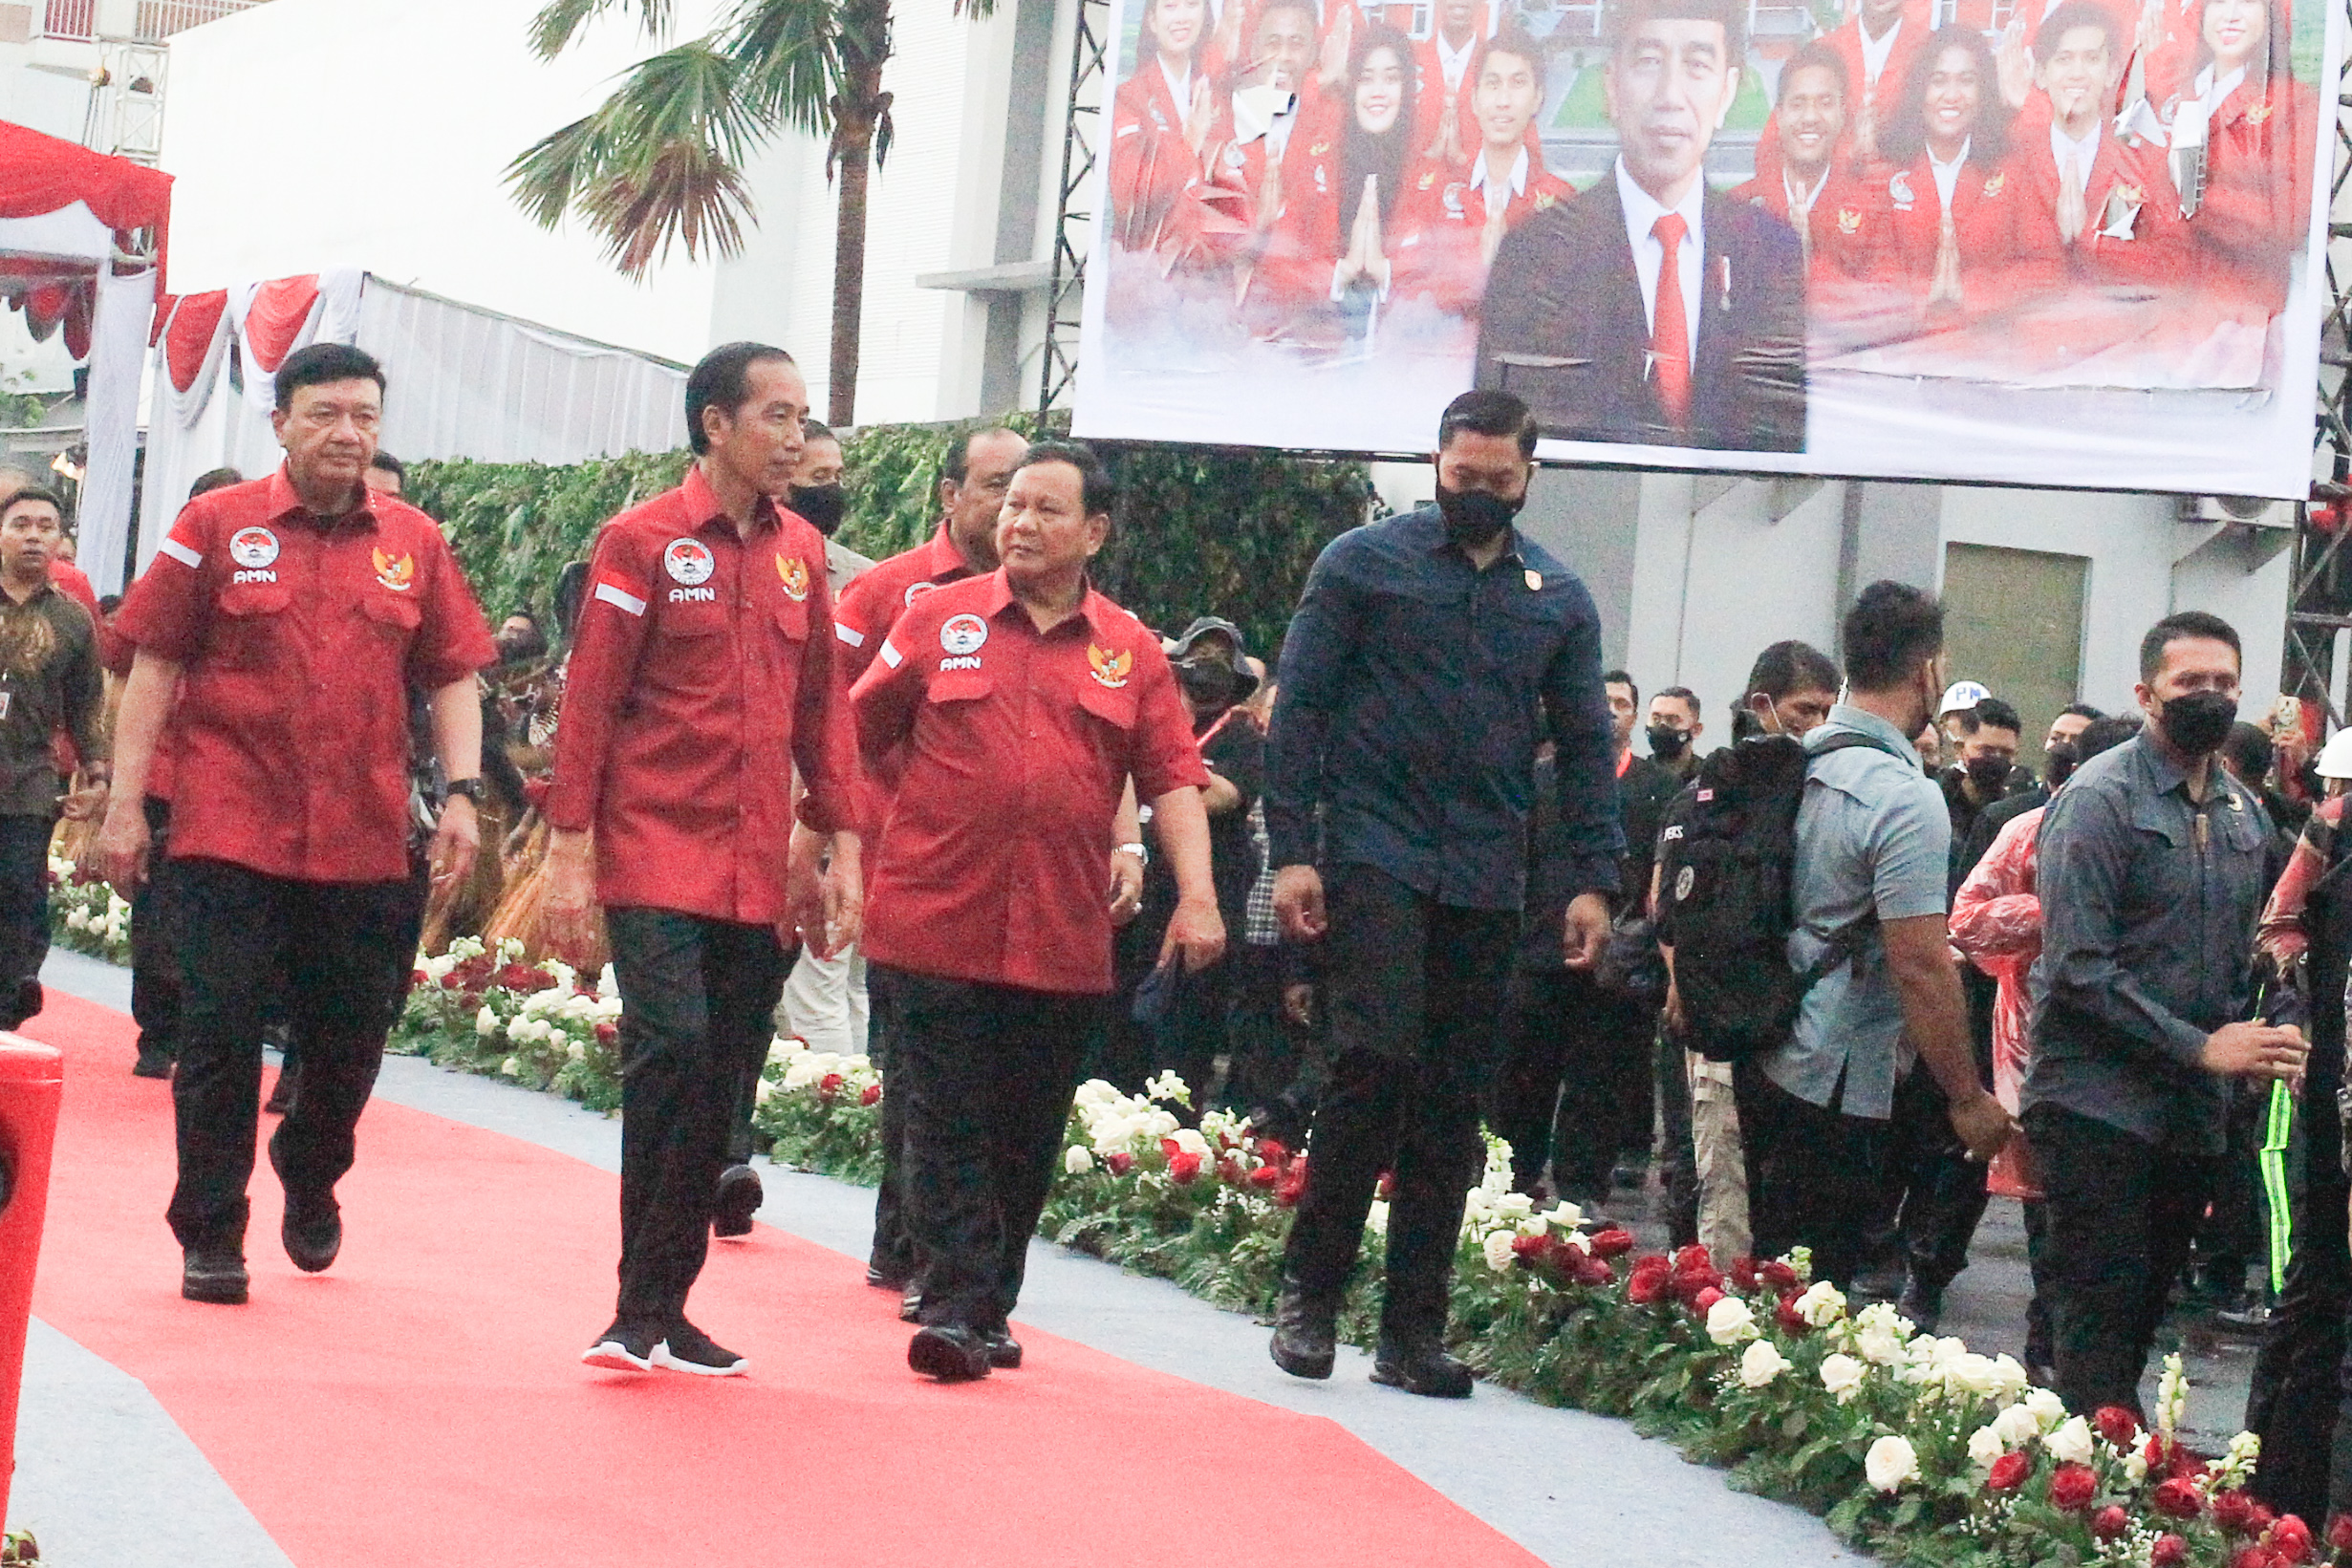 Kunjungi Surabaya, Presiden Jokowi Resmikan Asrama Mahasiswa Nusantara